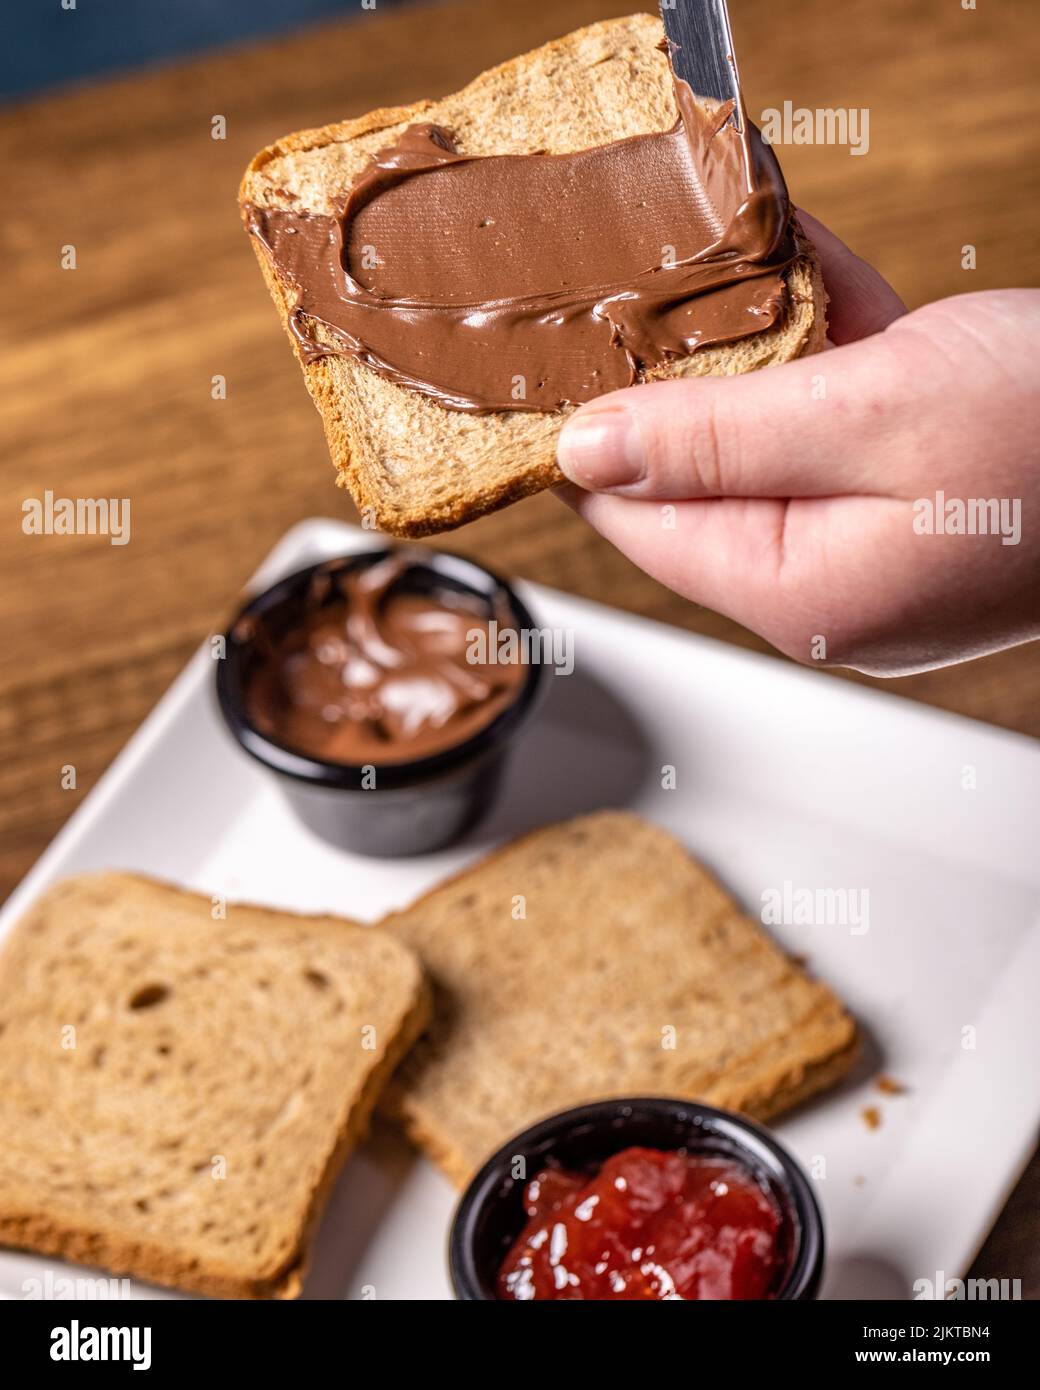 Eine Person, die Schokolade auf einem Toast verteilt, und ein Teller mit Marmelade, Schokolade und Toast auf einem Holztisch Stockfoto